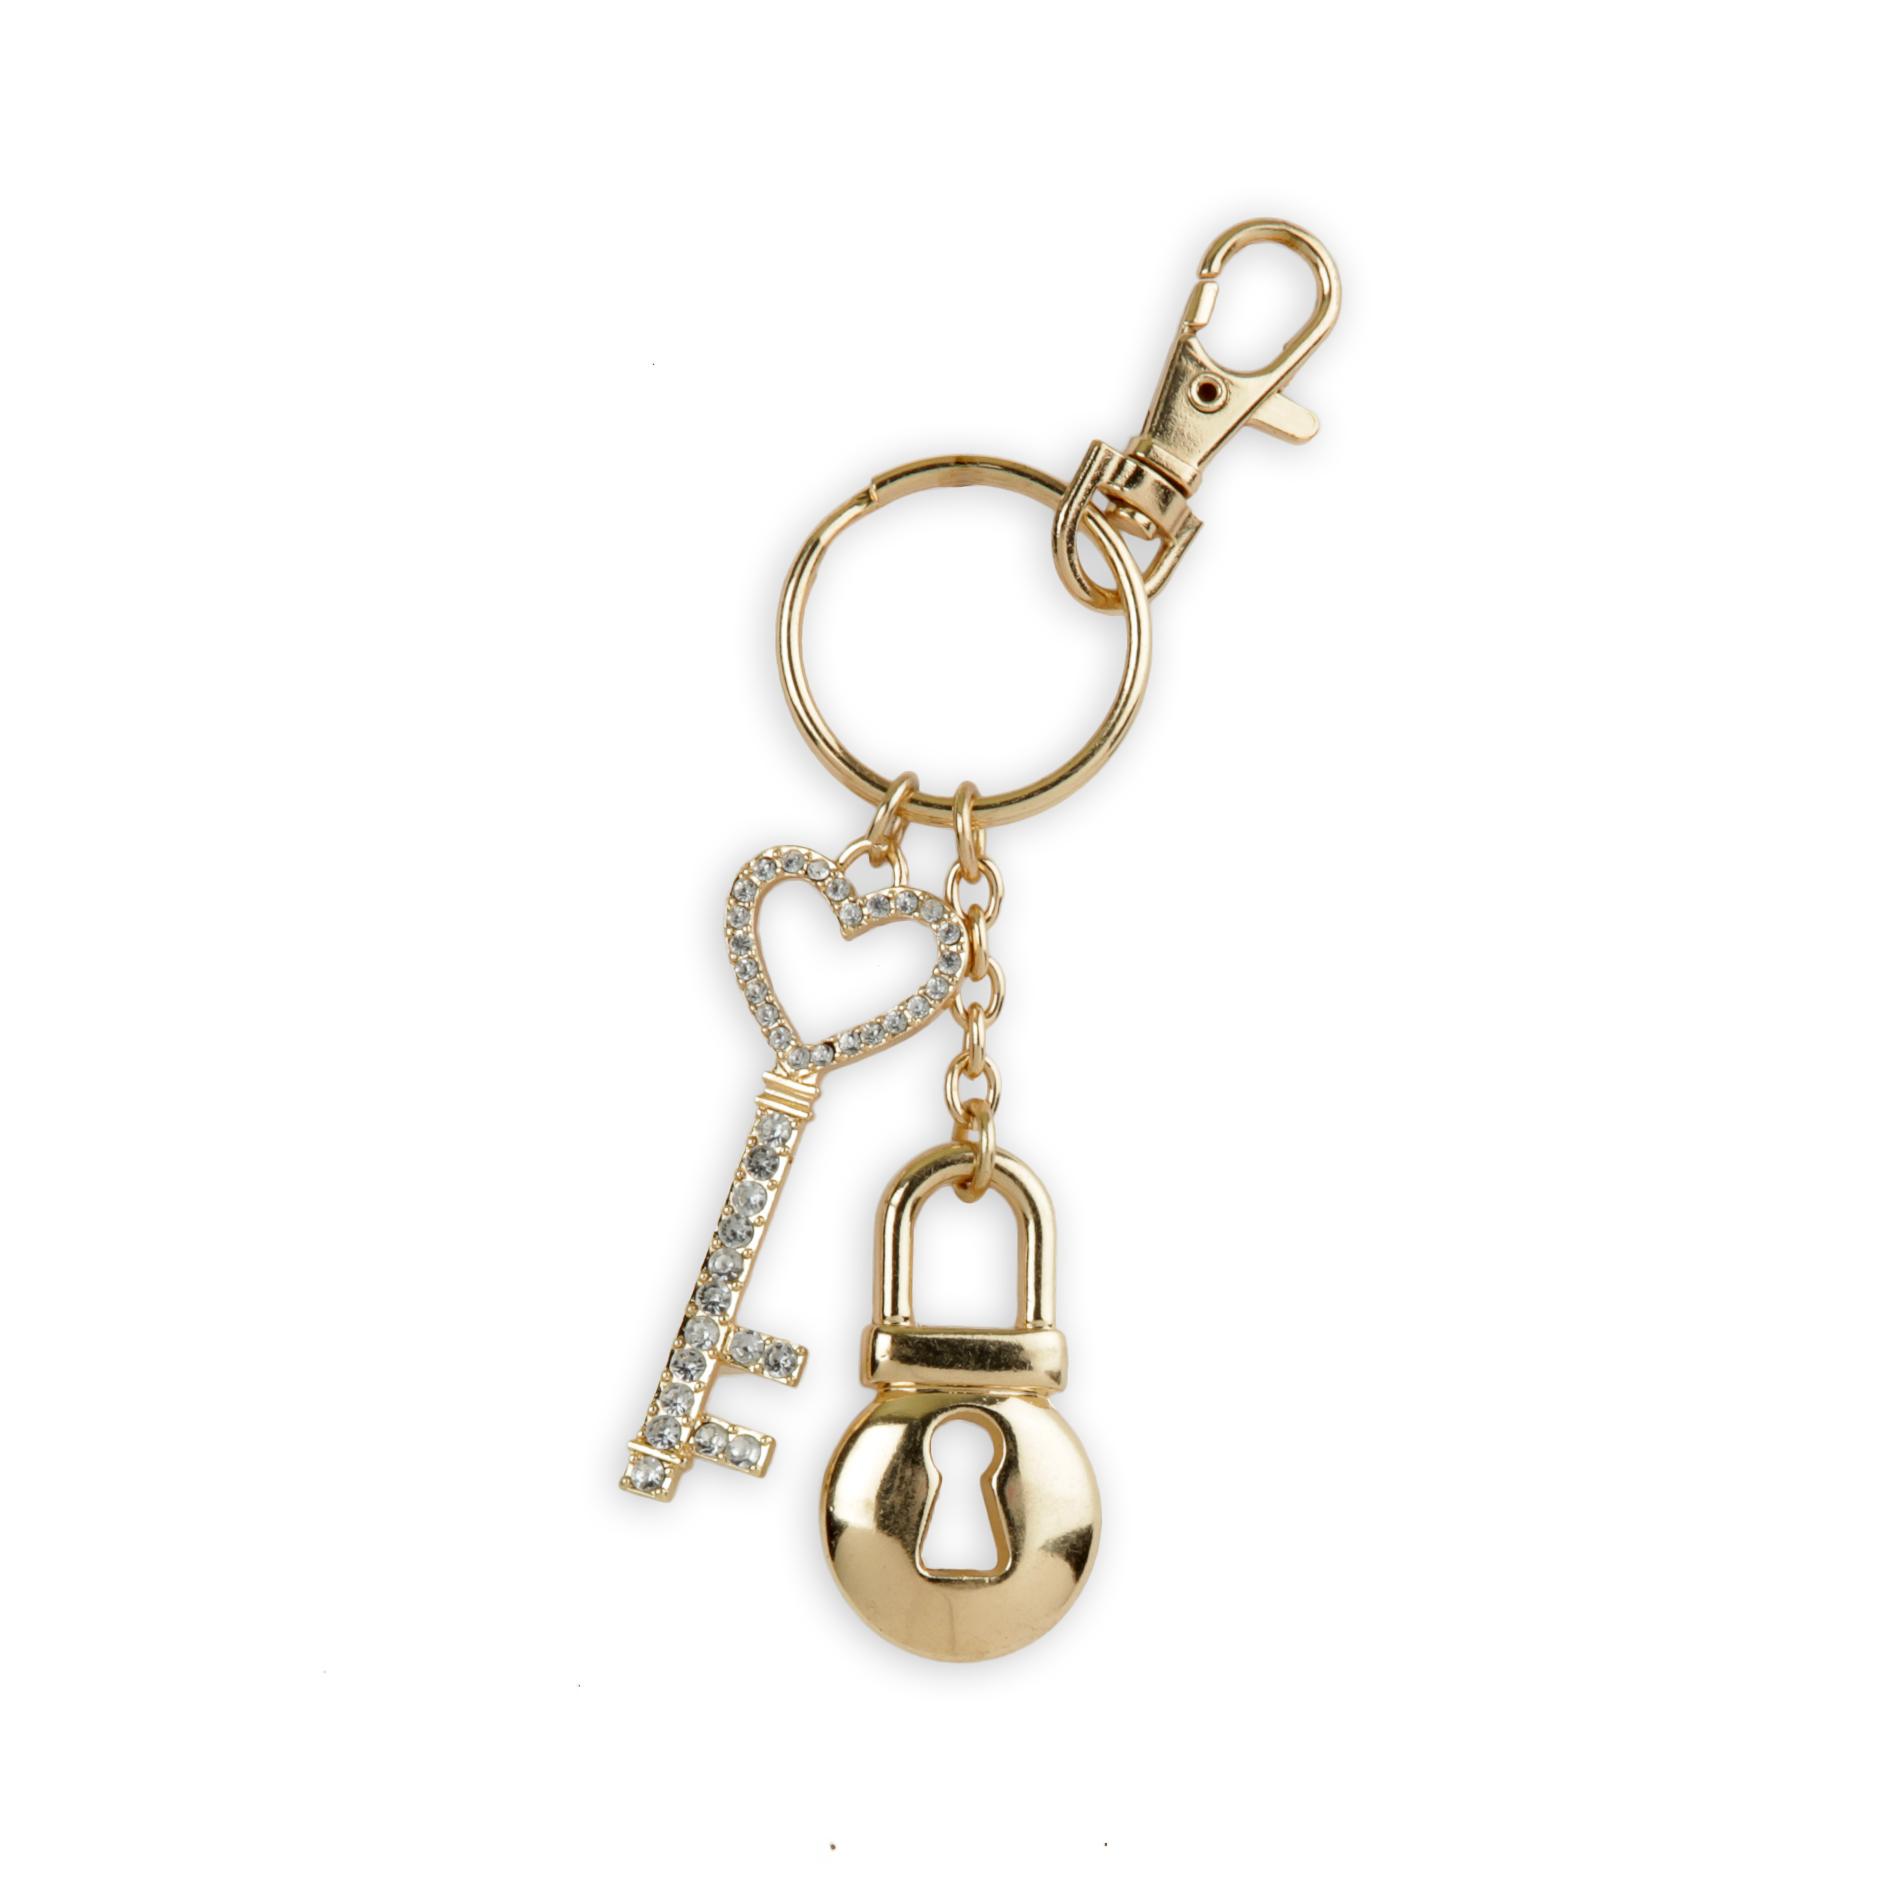 Women's Goldtone Key Chain - Lock & Key Charm